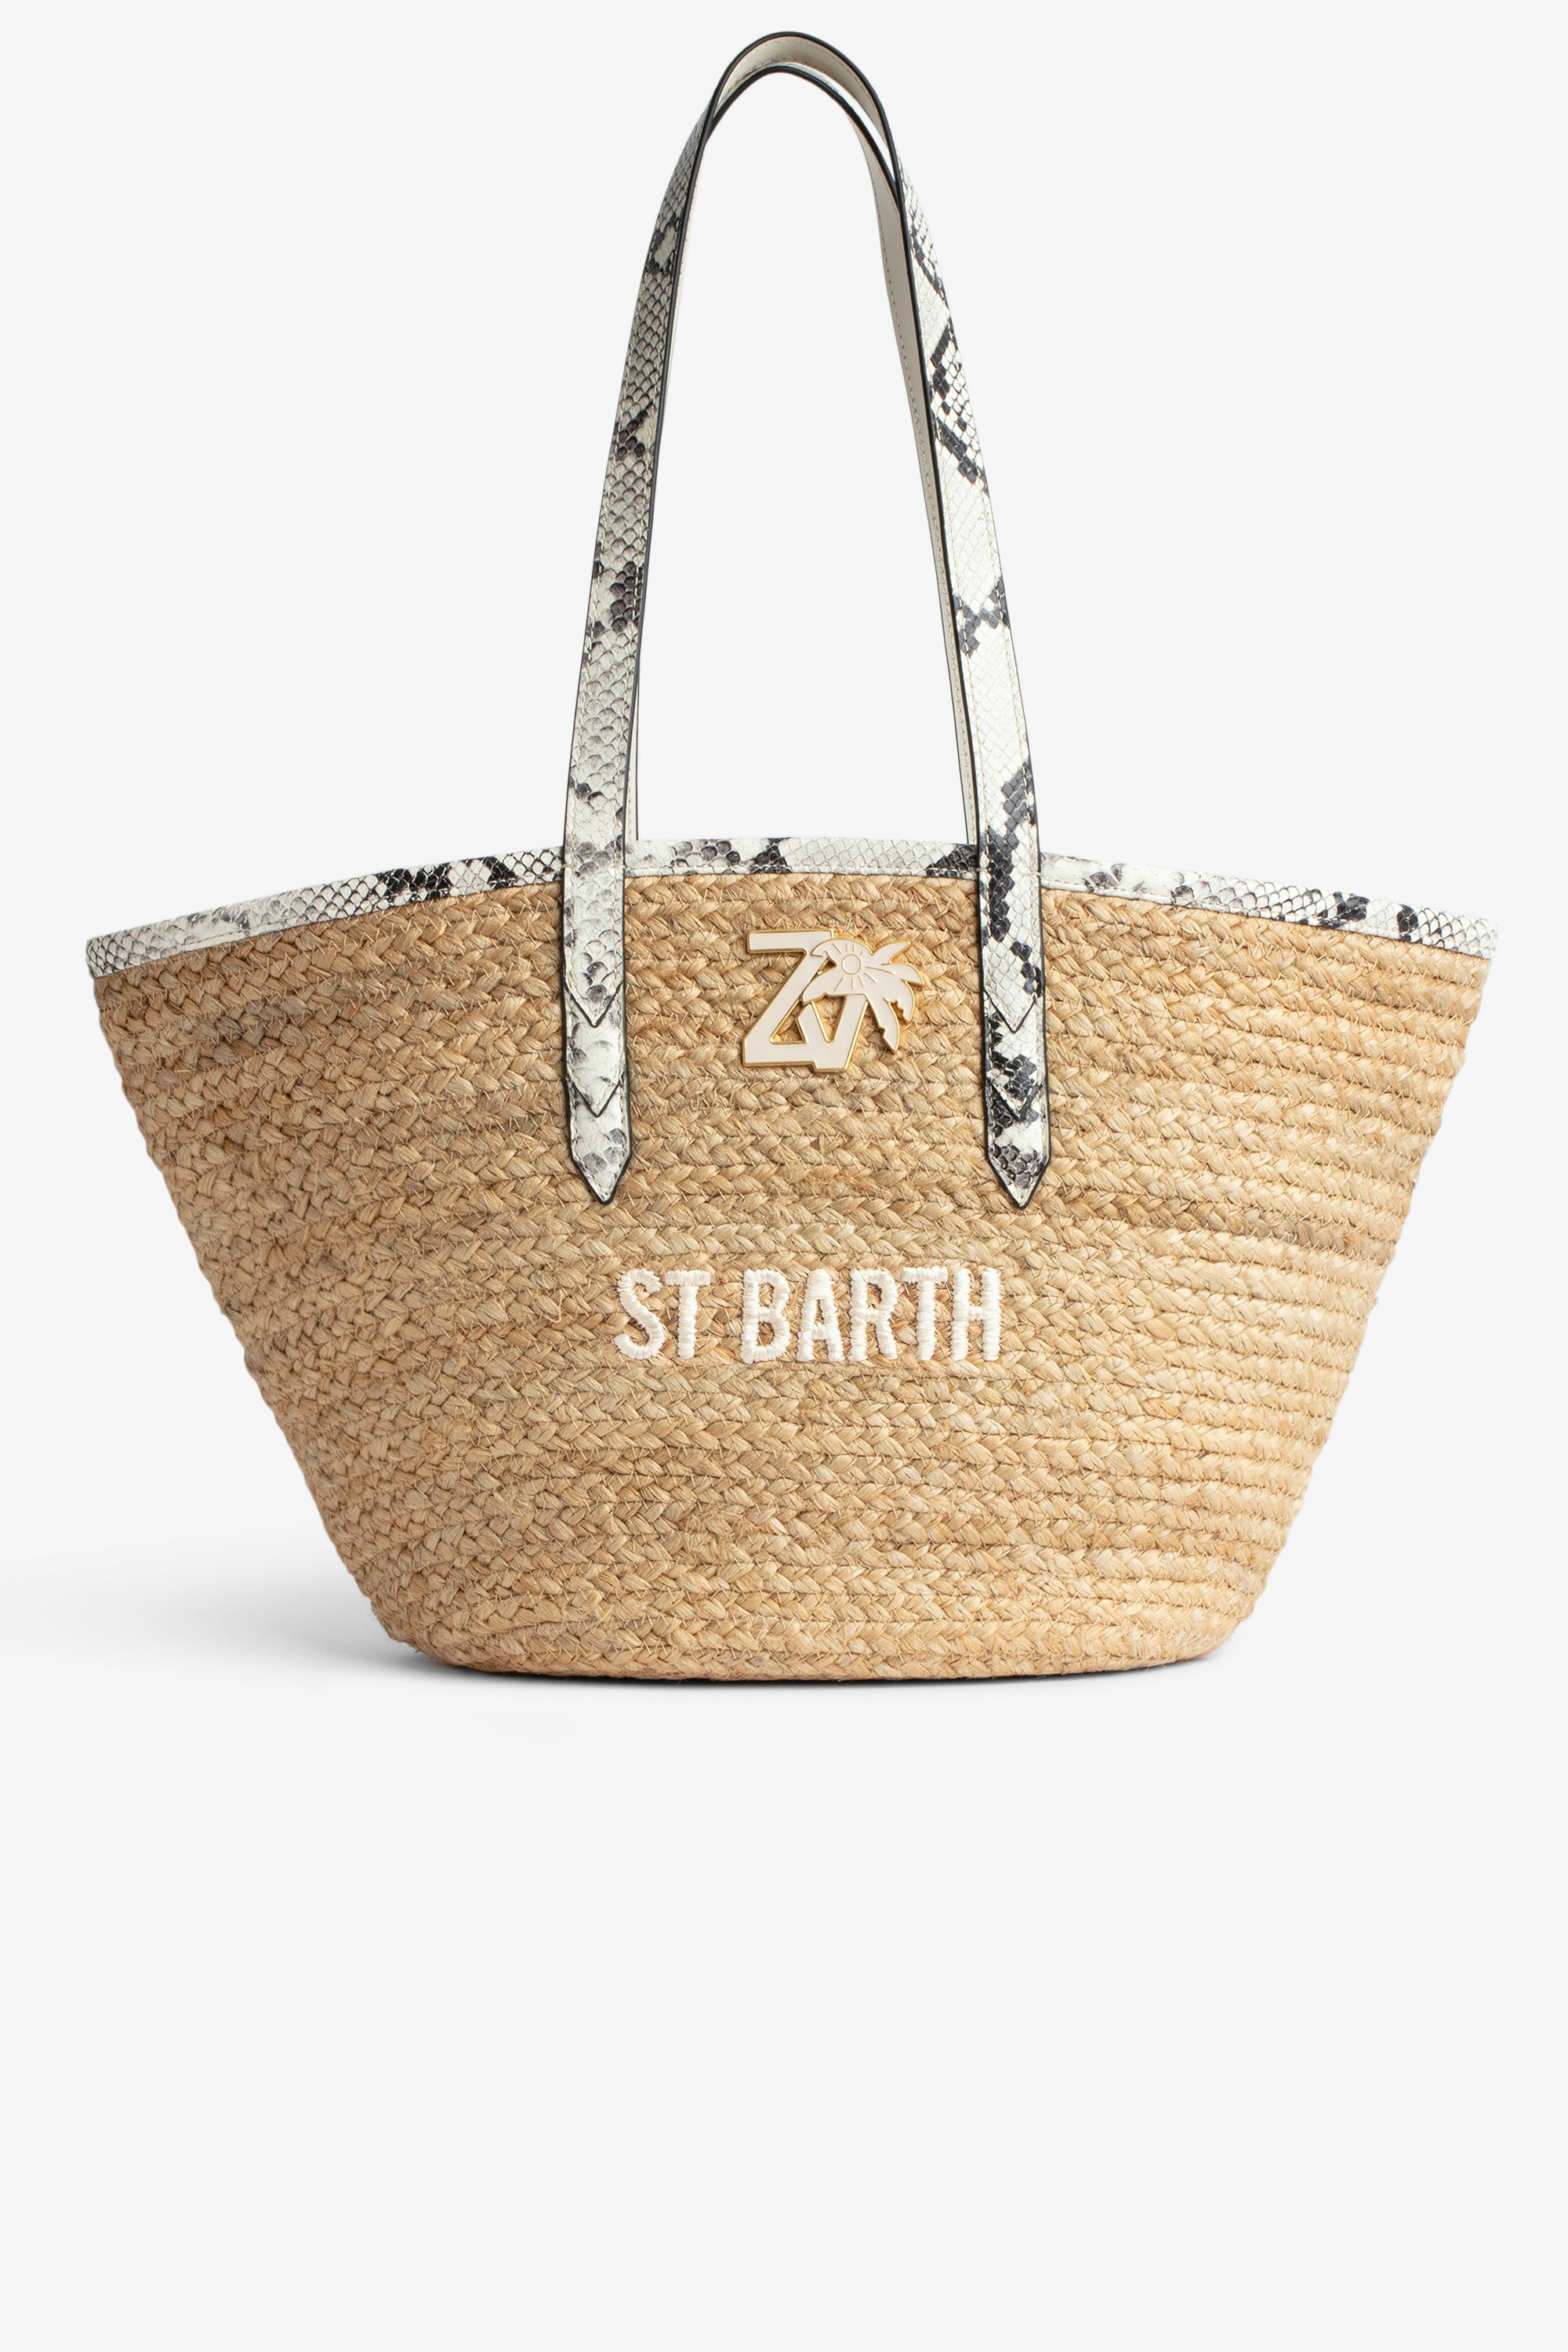 Tasche Le Beach Bag - Damen-Strohtasche mit Henkeln aus ecrufarbenem Leder in Python-Optik, „St Barth“-Stickerei und ZV-Charm